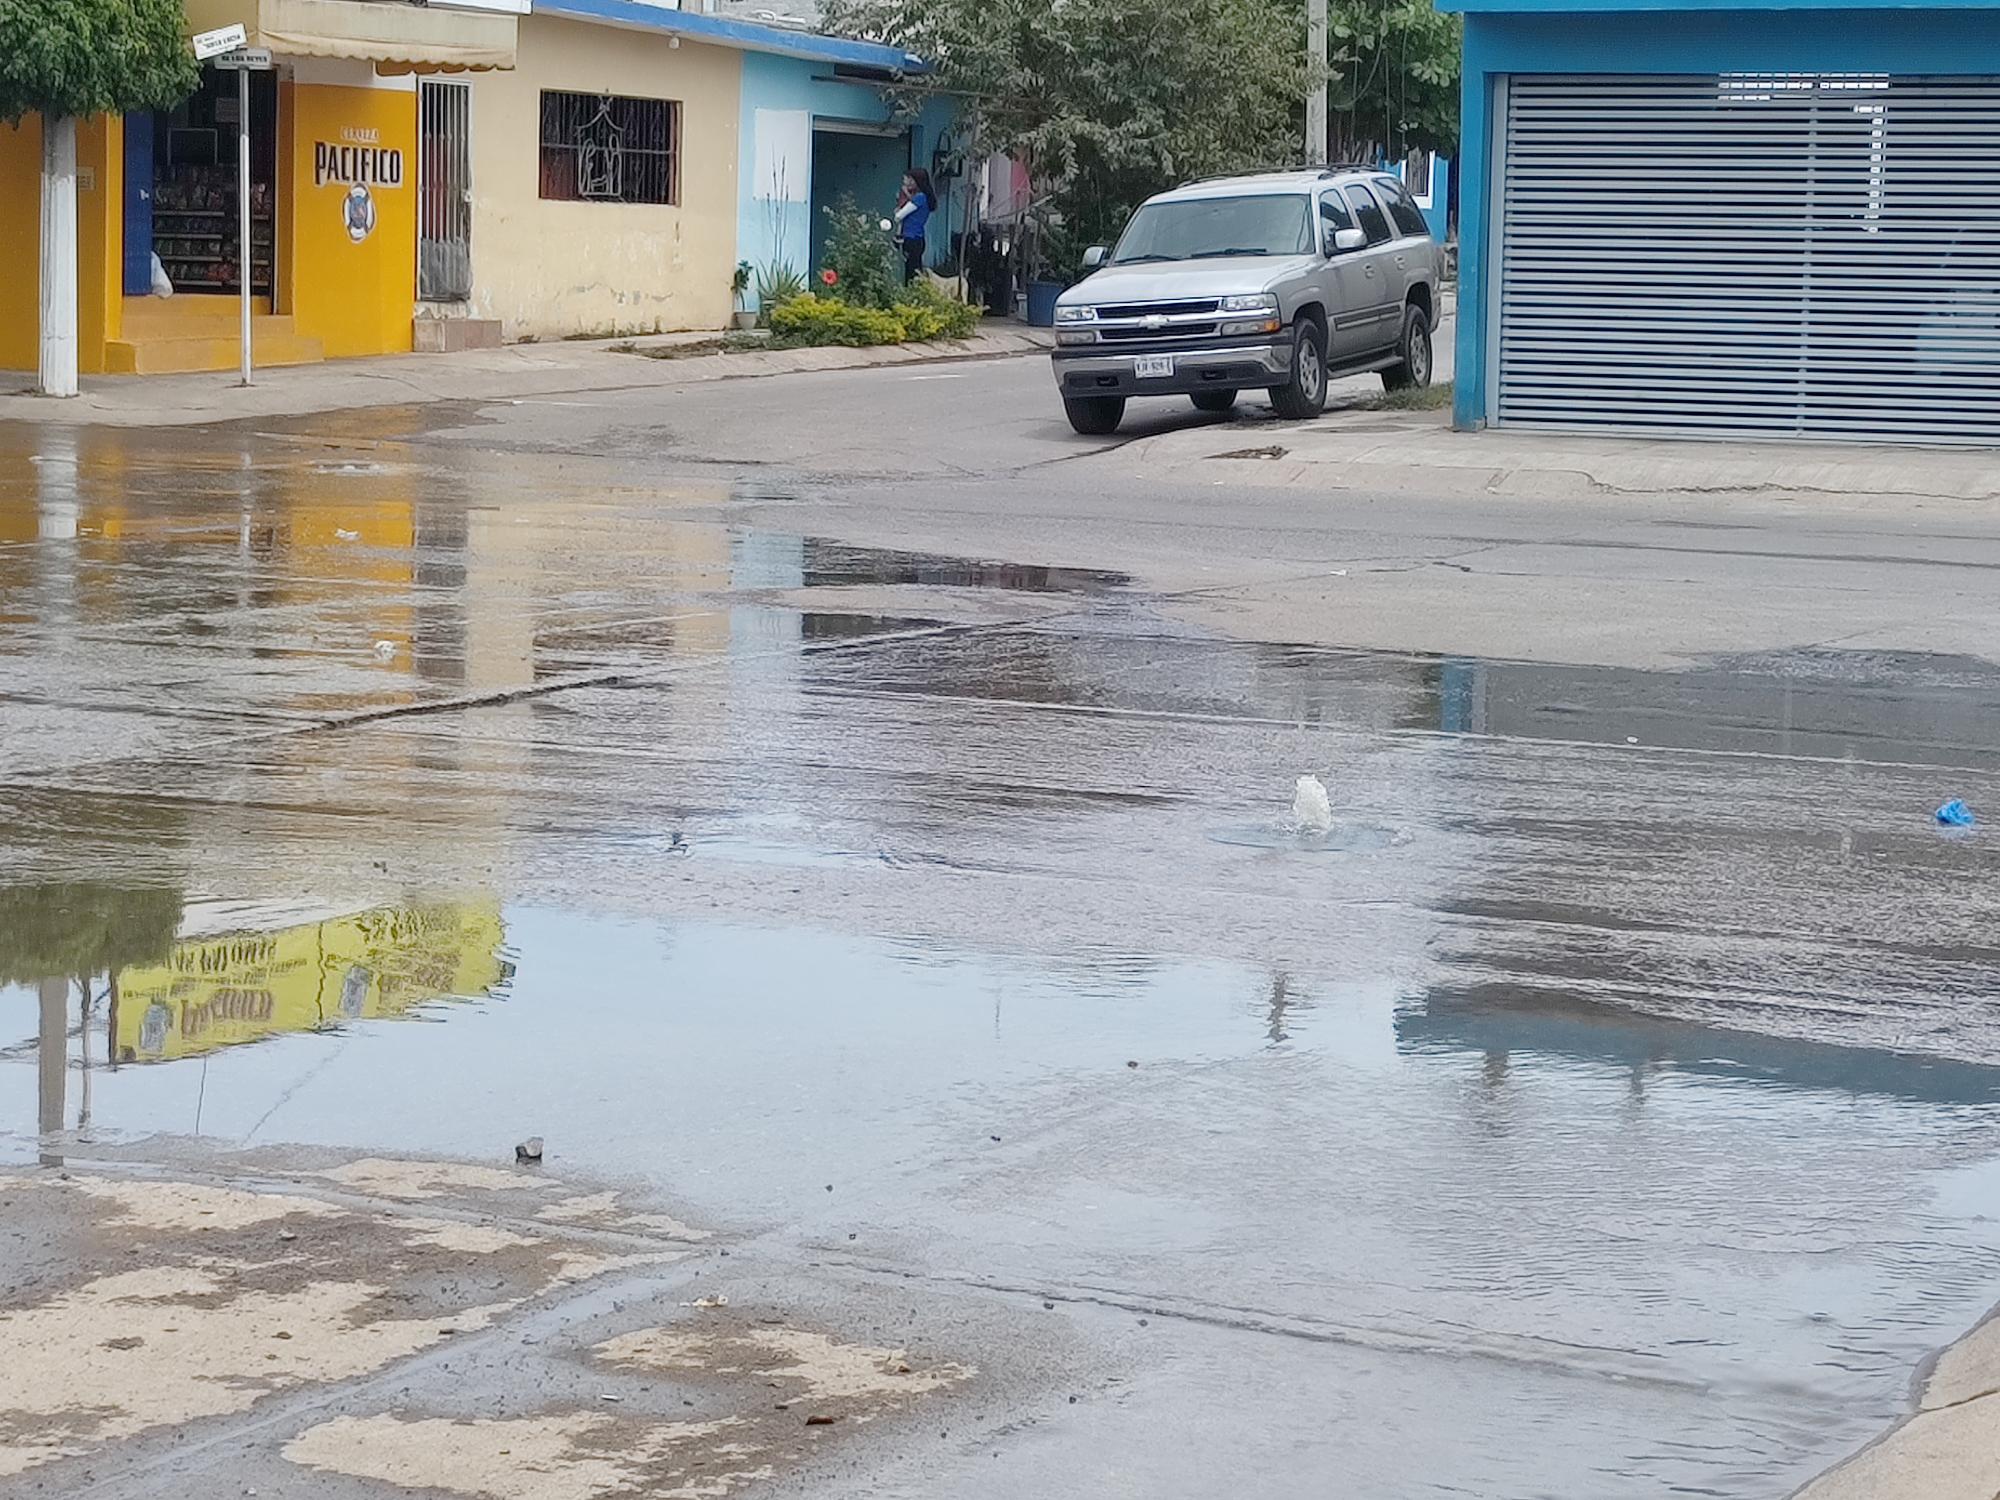 $!Aguas negras inundan calles de Santa Teresa en Mazatlán